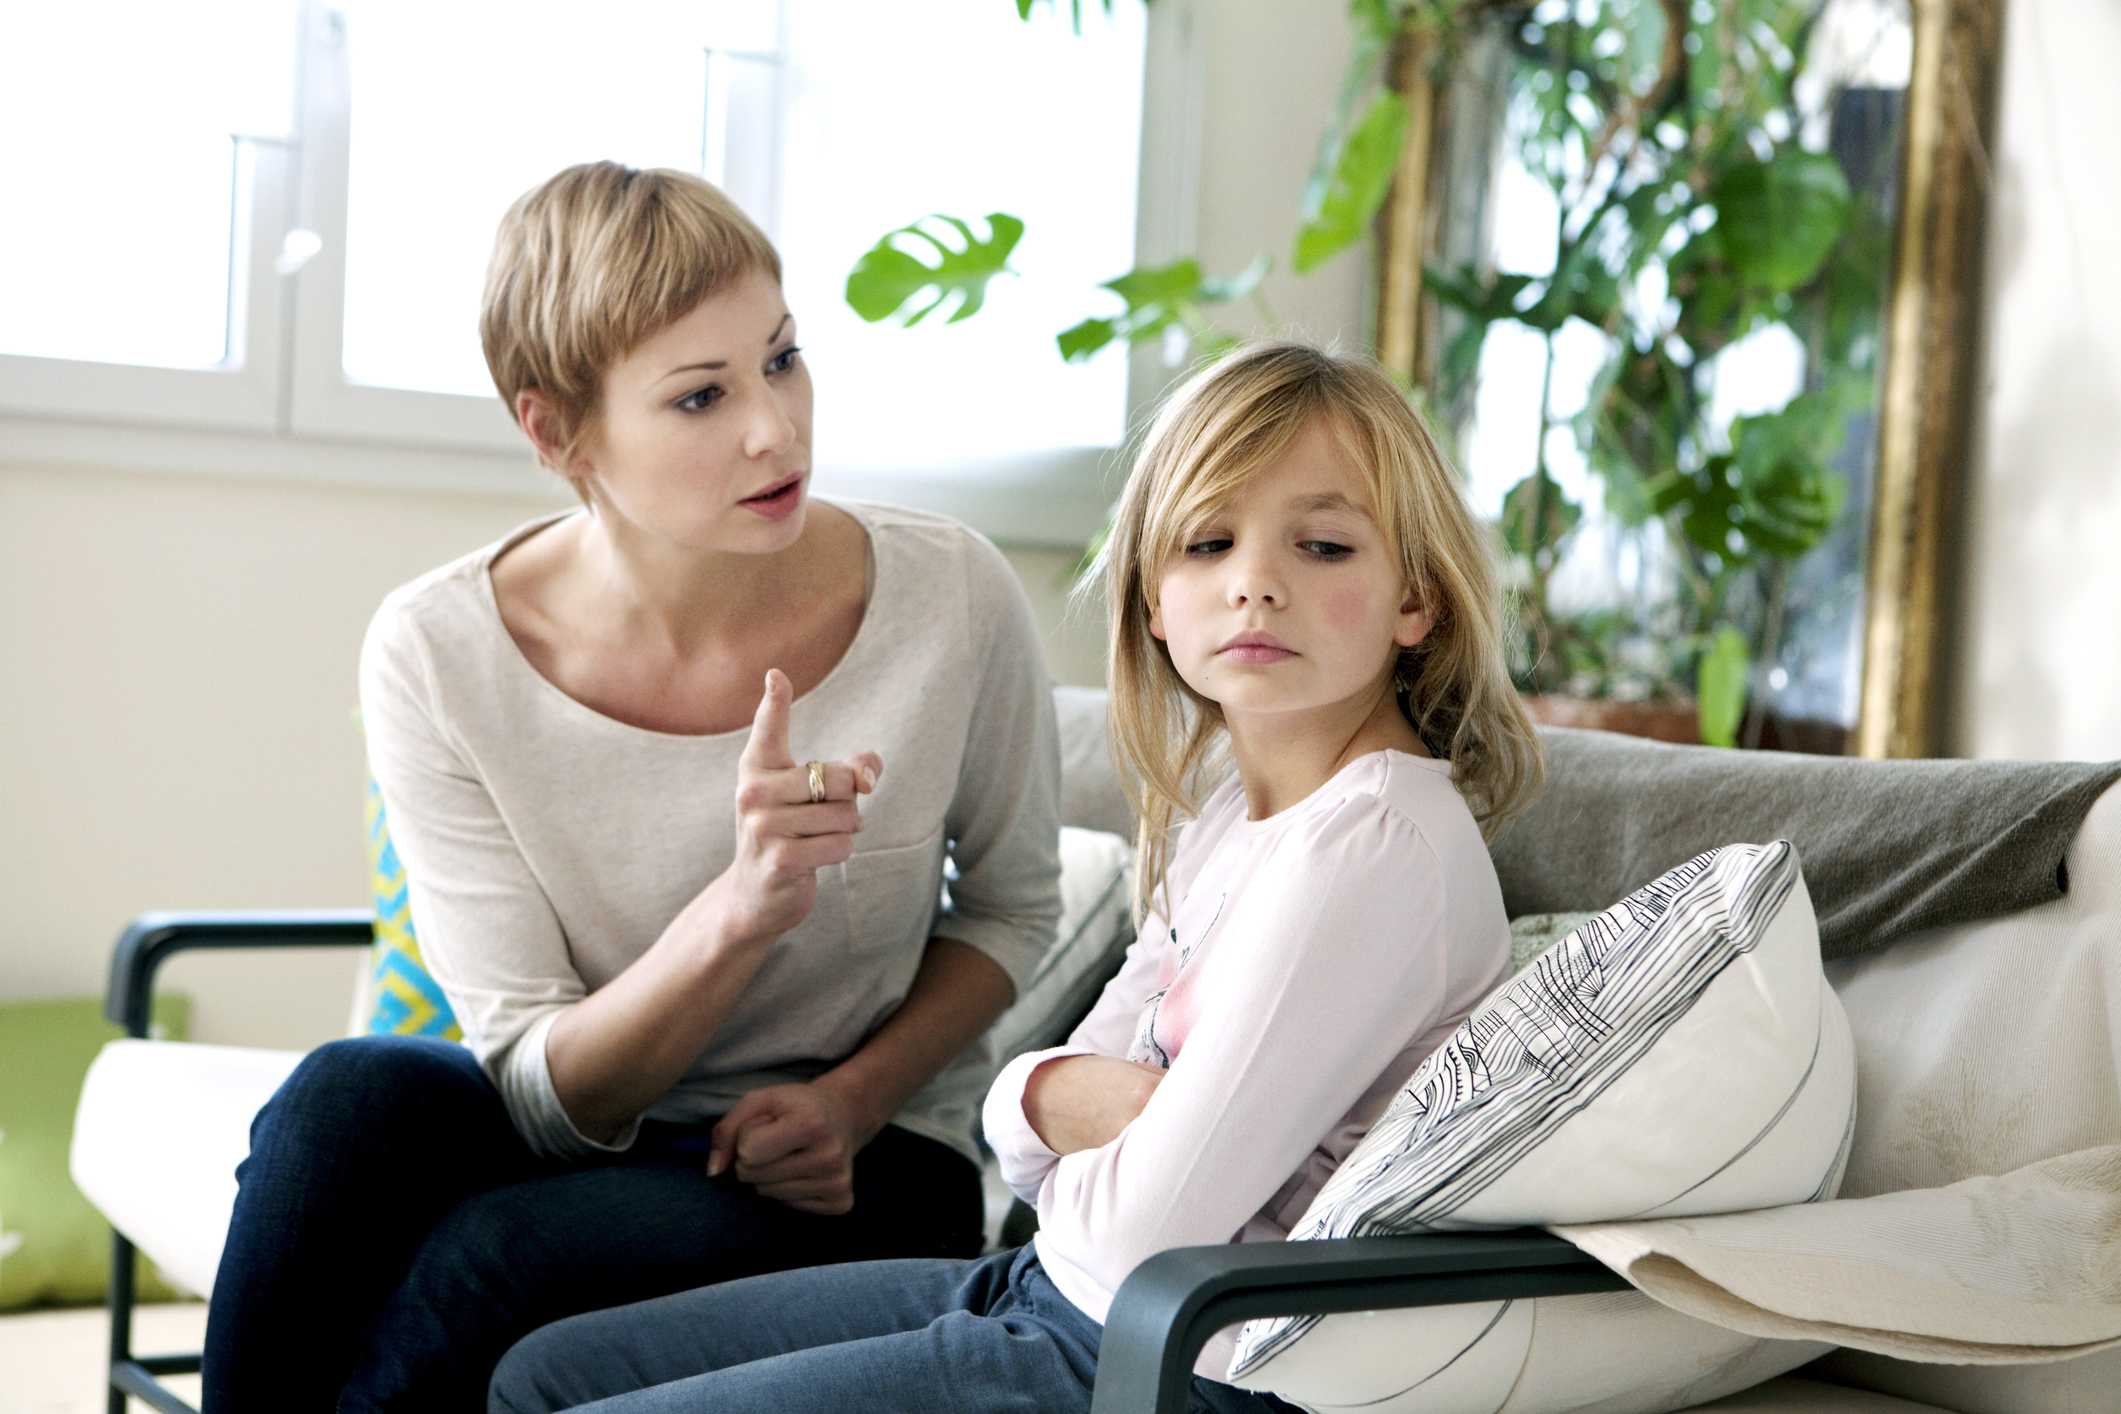 Раздражает дочь – не слушается, хамит. что делать? как говорить с дочерью